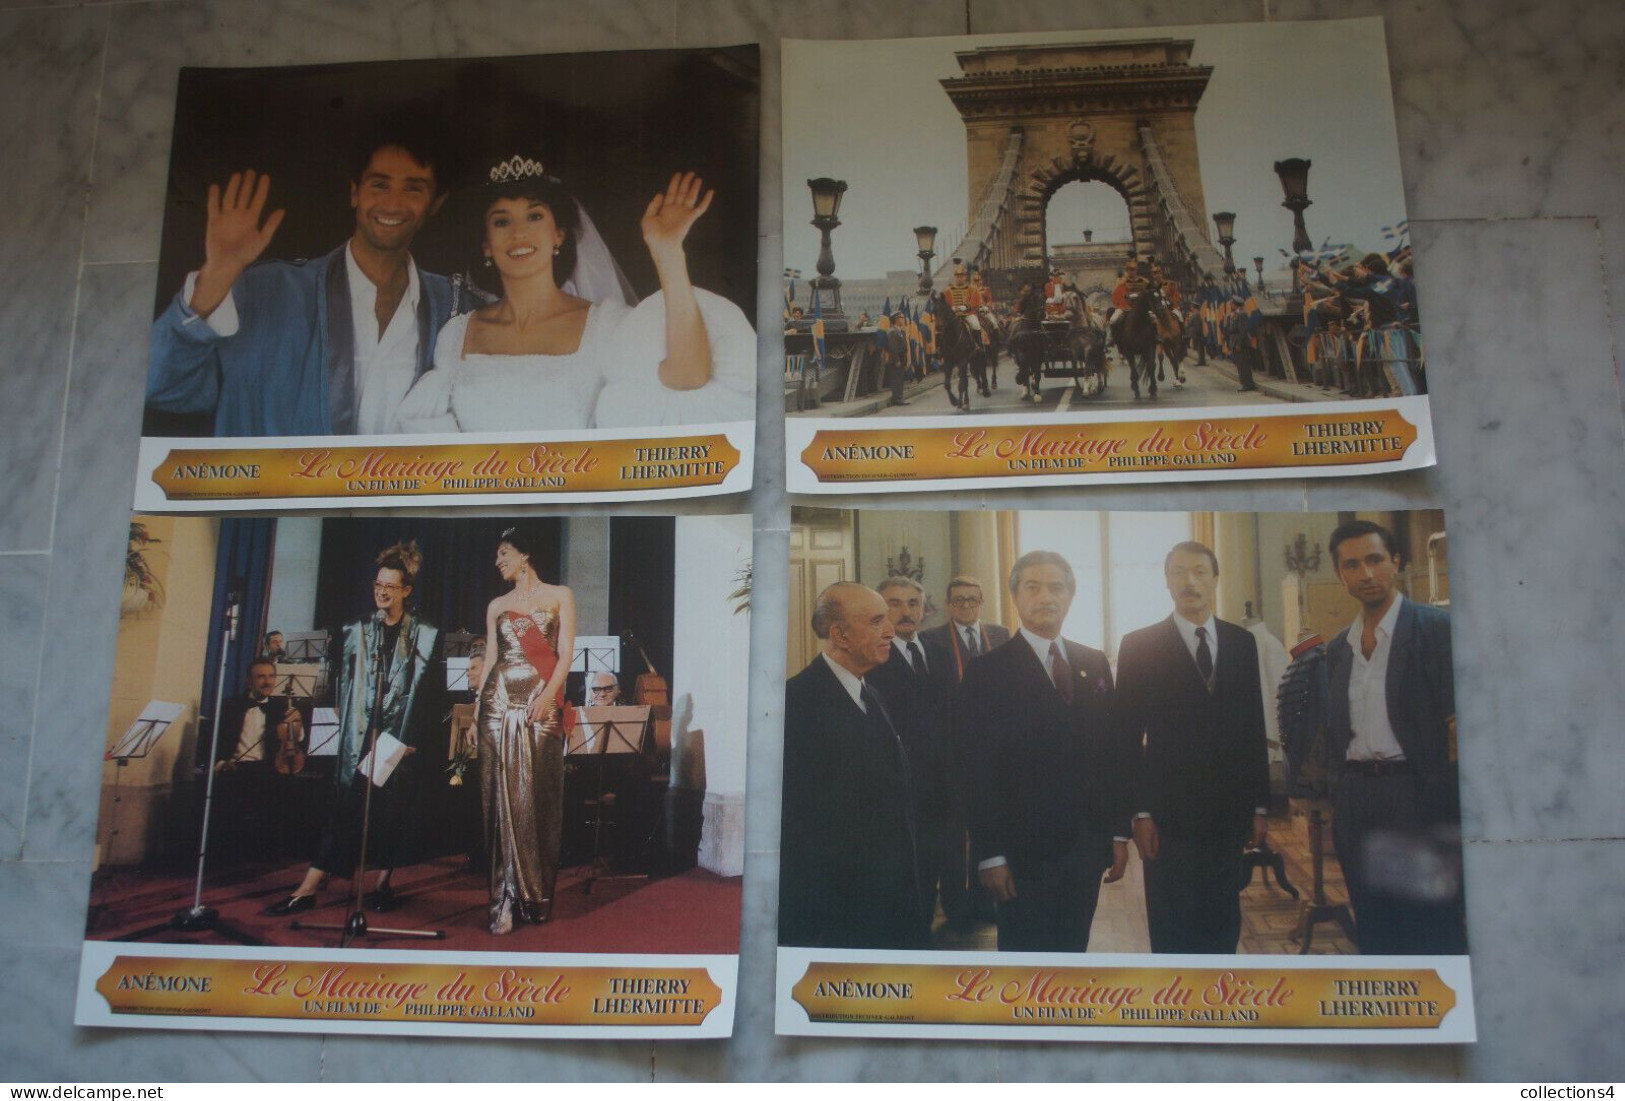 LE MARIAGE DU SIECLE 1985 LOT 12 PHOTOS ANEMONE THIERRY LHERMITE - Fotos